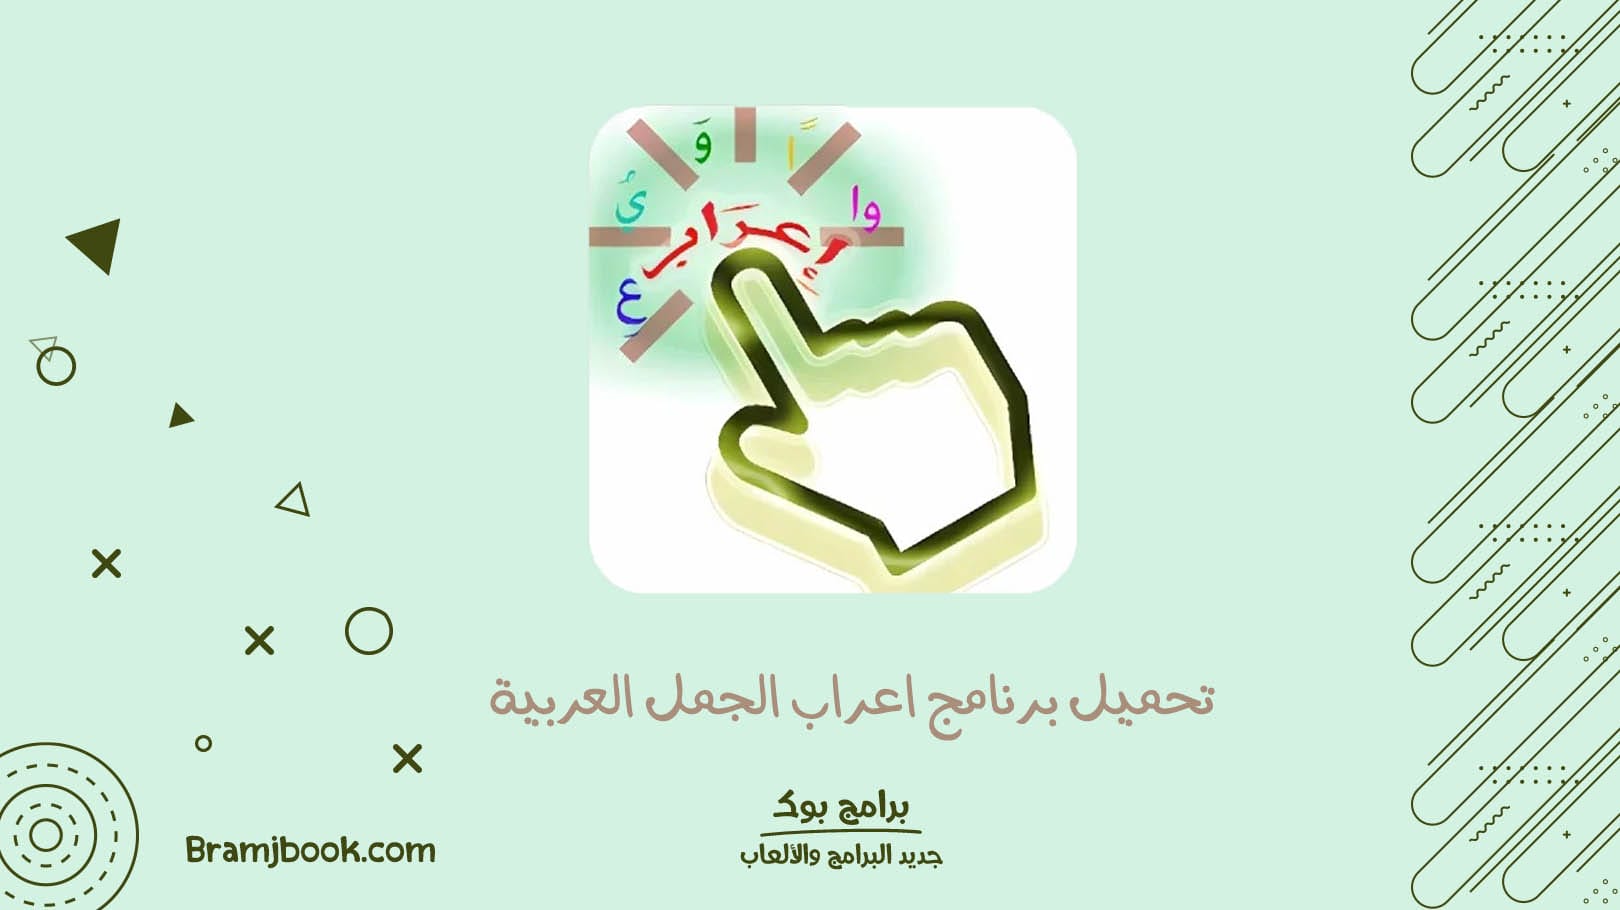 تحميل برنامج اعراب الجمل العربية belarabi 